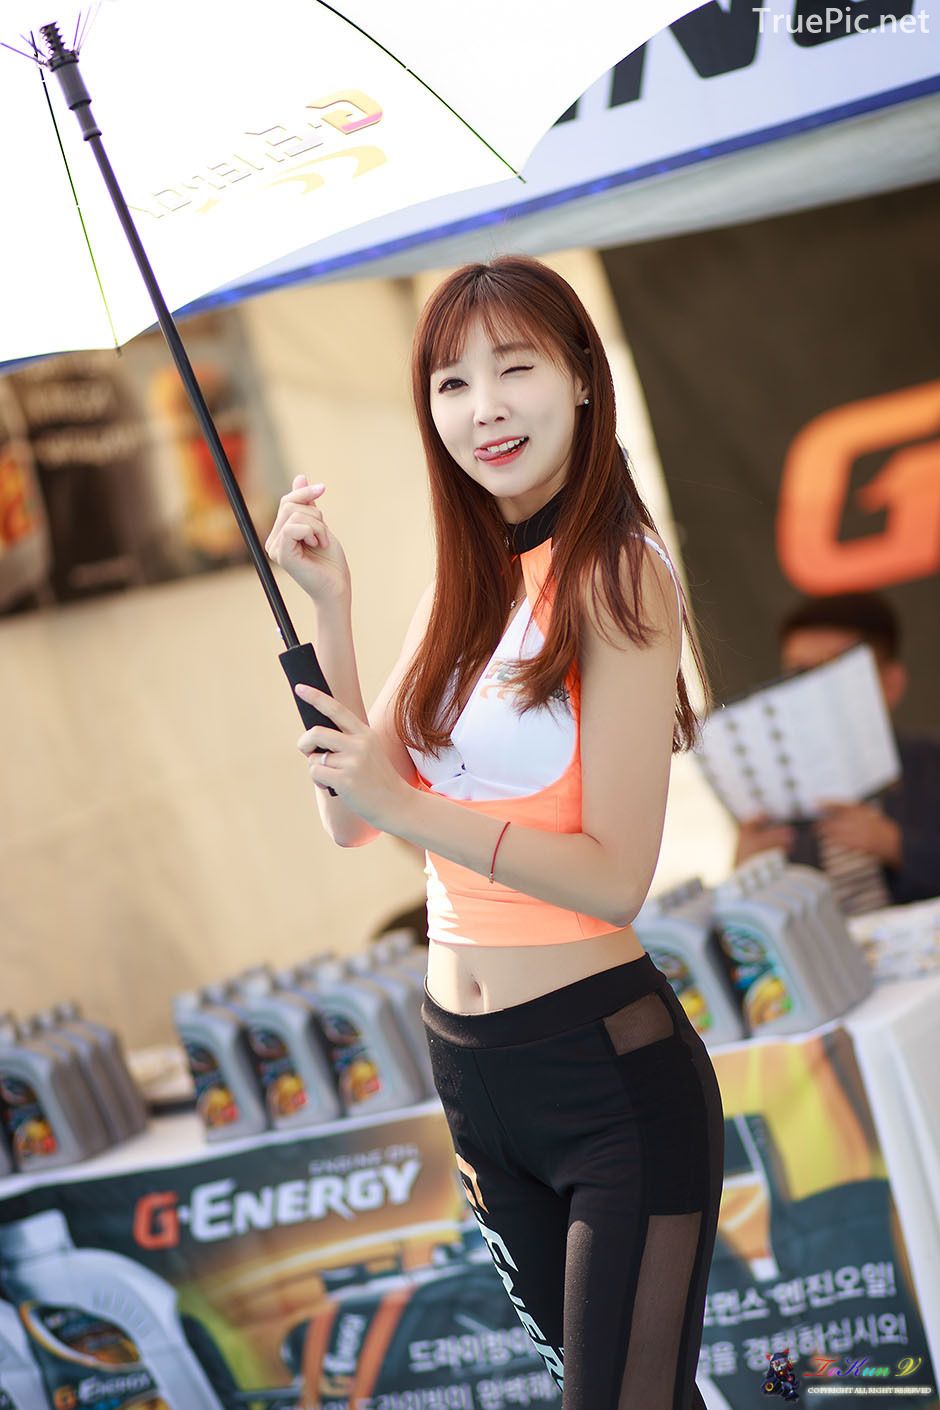 Image-Korean-Racing-Model-Lee-Yoo-Eun-Incheon-KoreaTuning-Festival-Show-TruePic.net- Picture-36